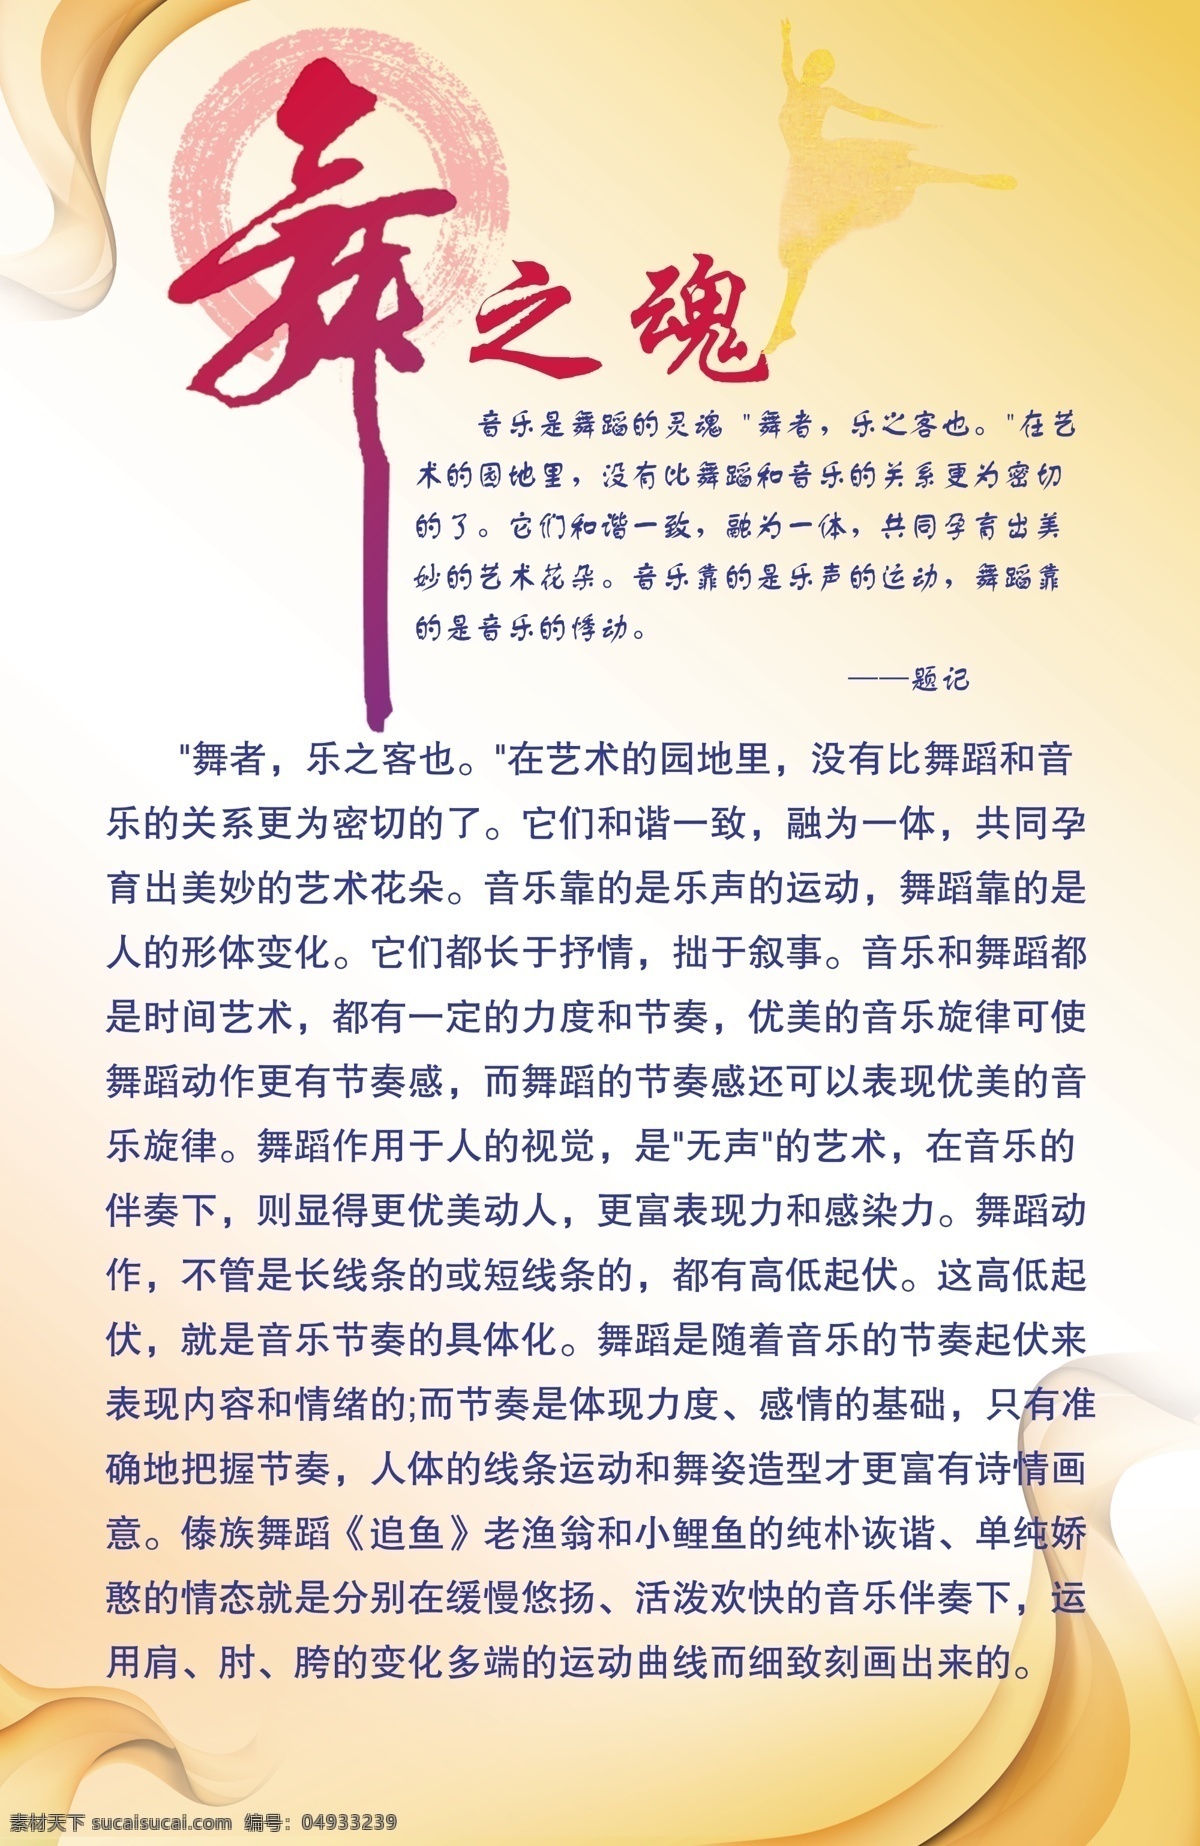 汉族舞蹈知识 族舞蹈知识 舞之魂 汉族 舞蹈 学校展板 线条 舞者 舞 展板模板 广告设计模板 源文件 白色